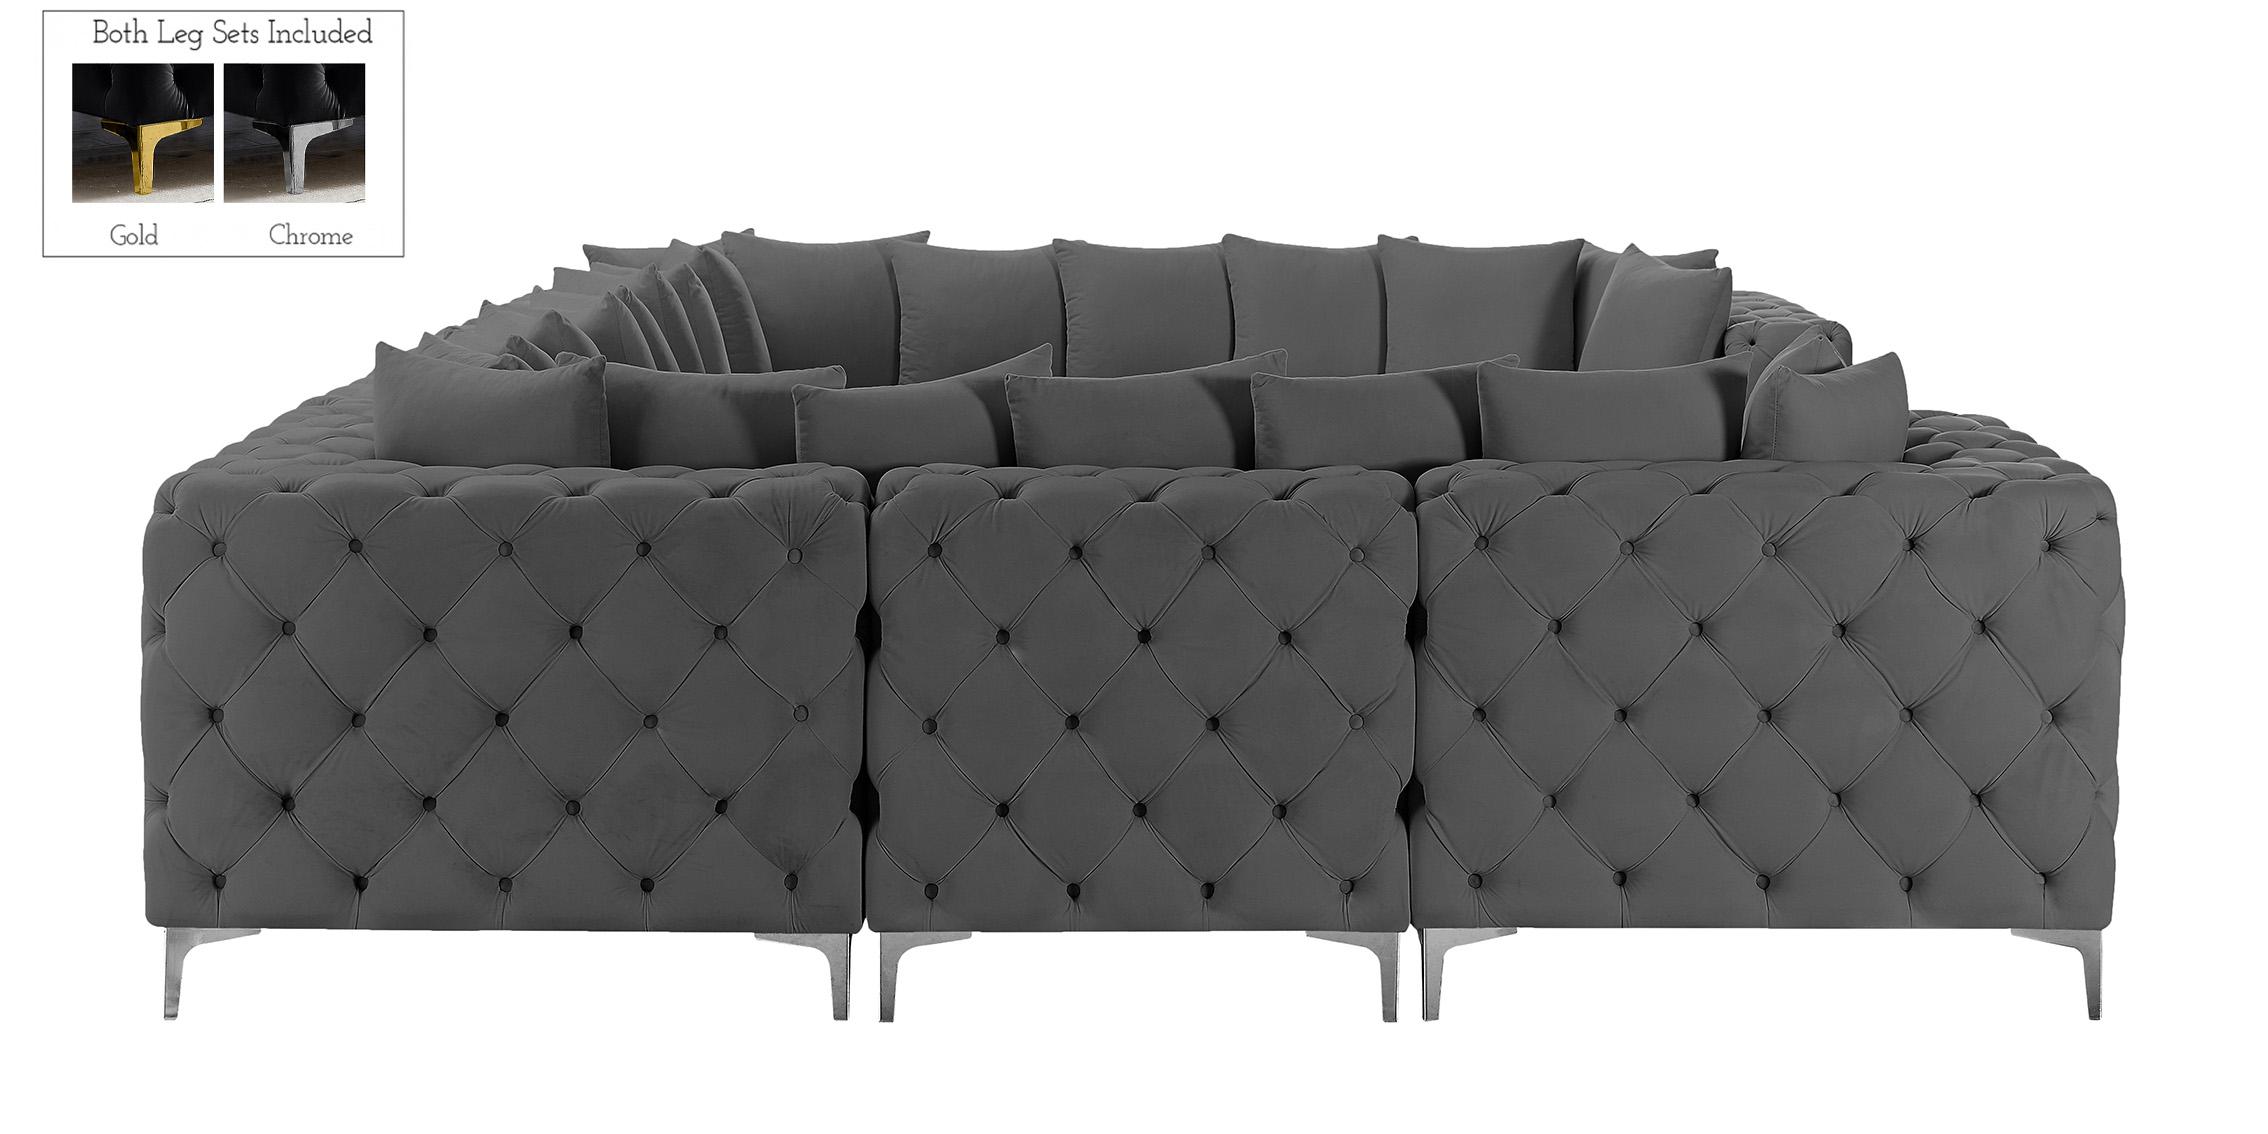 

    
686Grey-Sec8A Meridian Furniture Modular Sectional Sofa
